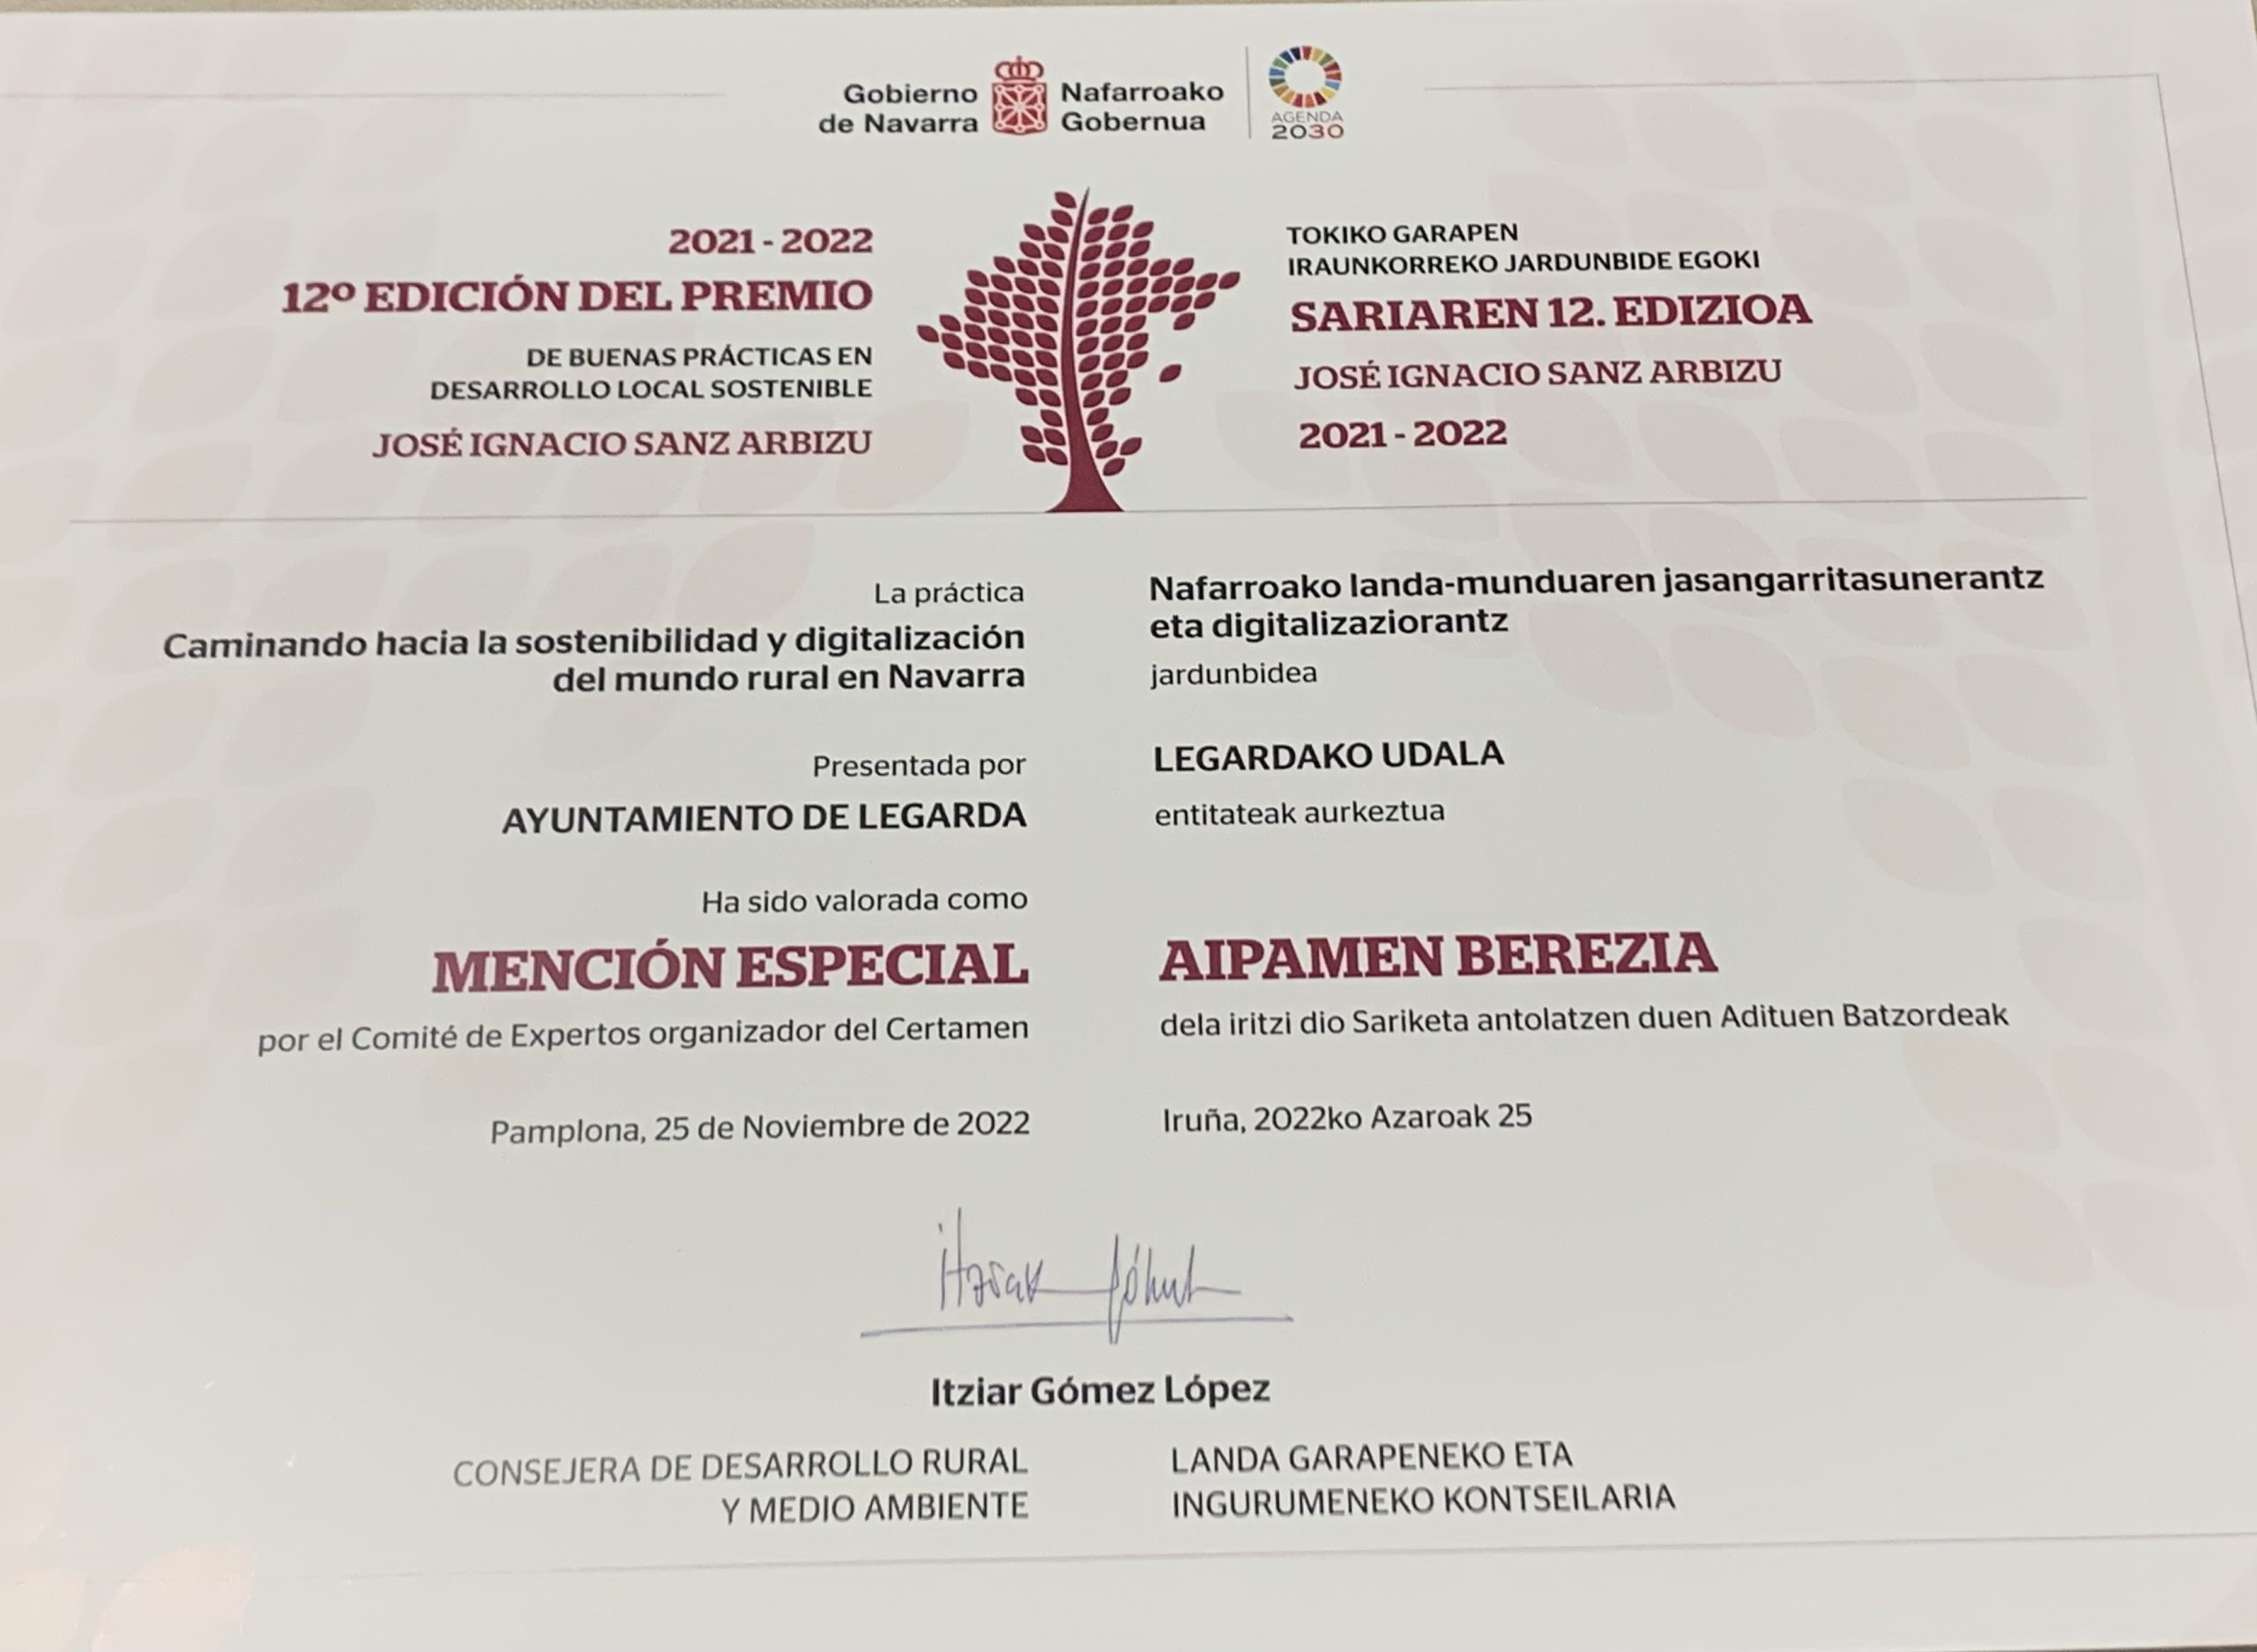 Legarda obtiene una Mención Especial en la 12ª edición de los Premios José Ignacio Sanz Arbizu de Buenas Prácticas en Desarrollo Local Sostenible